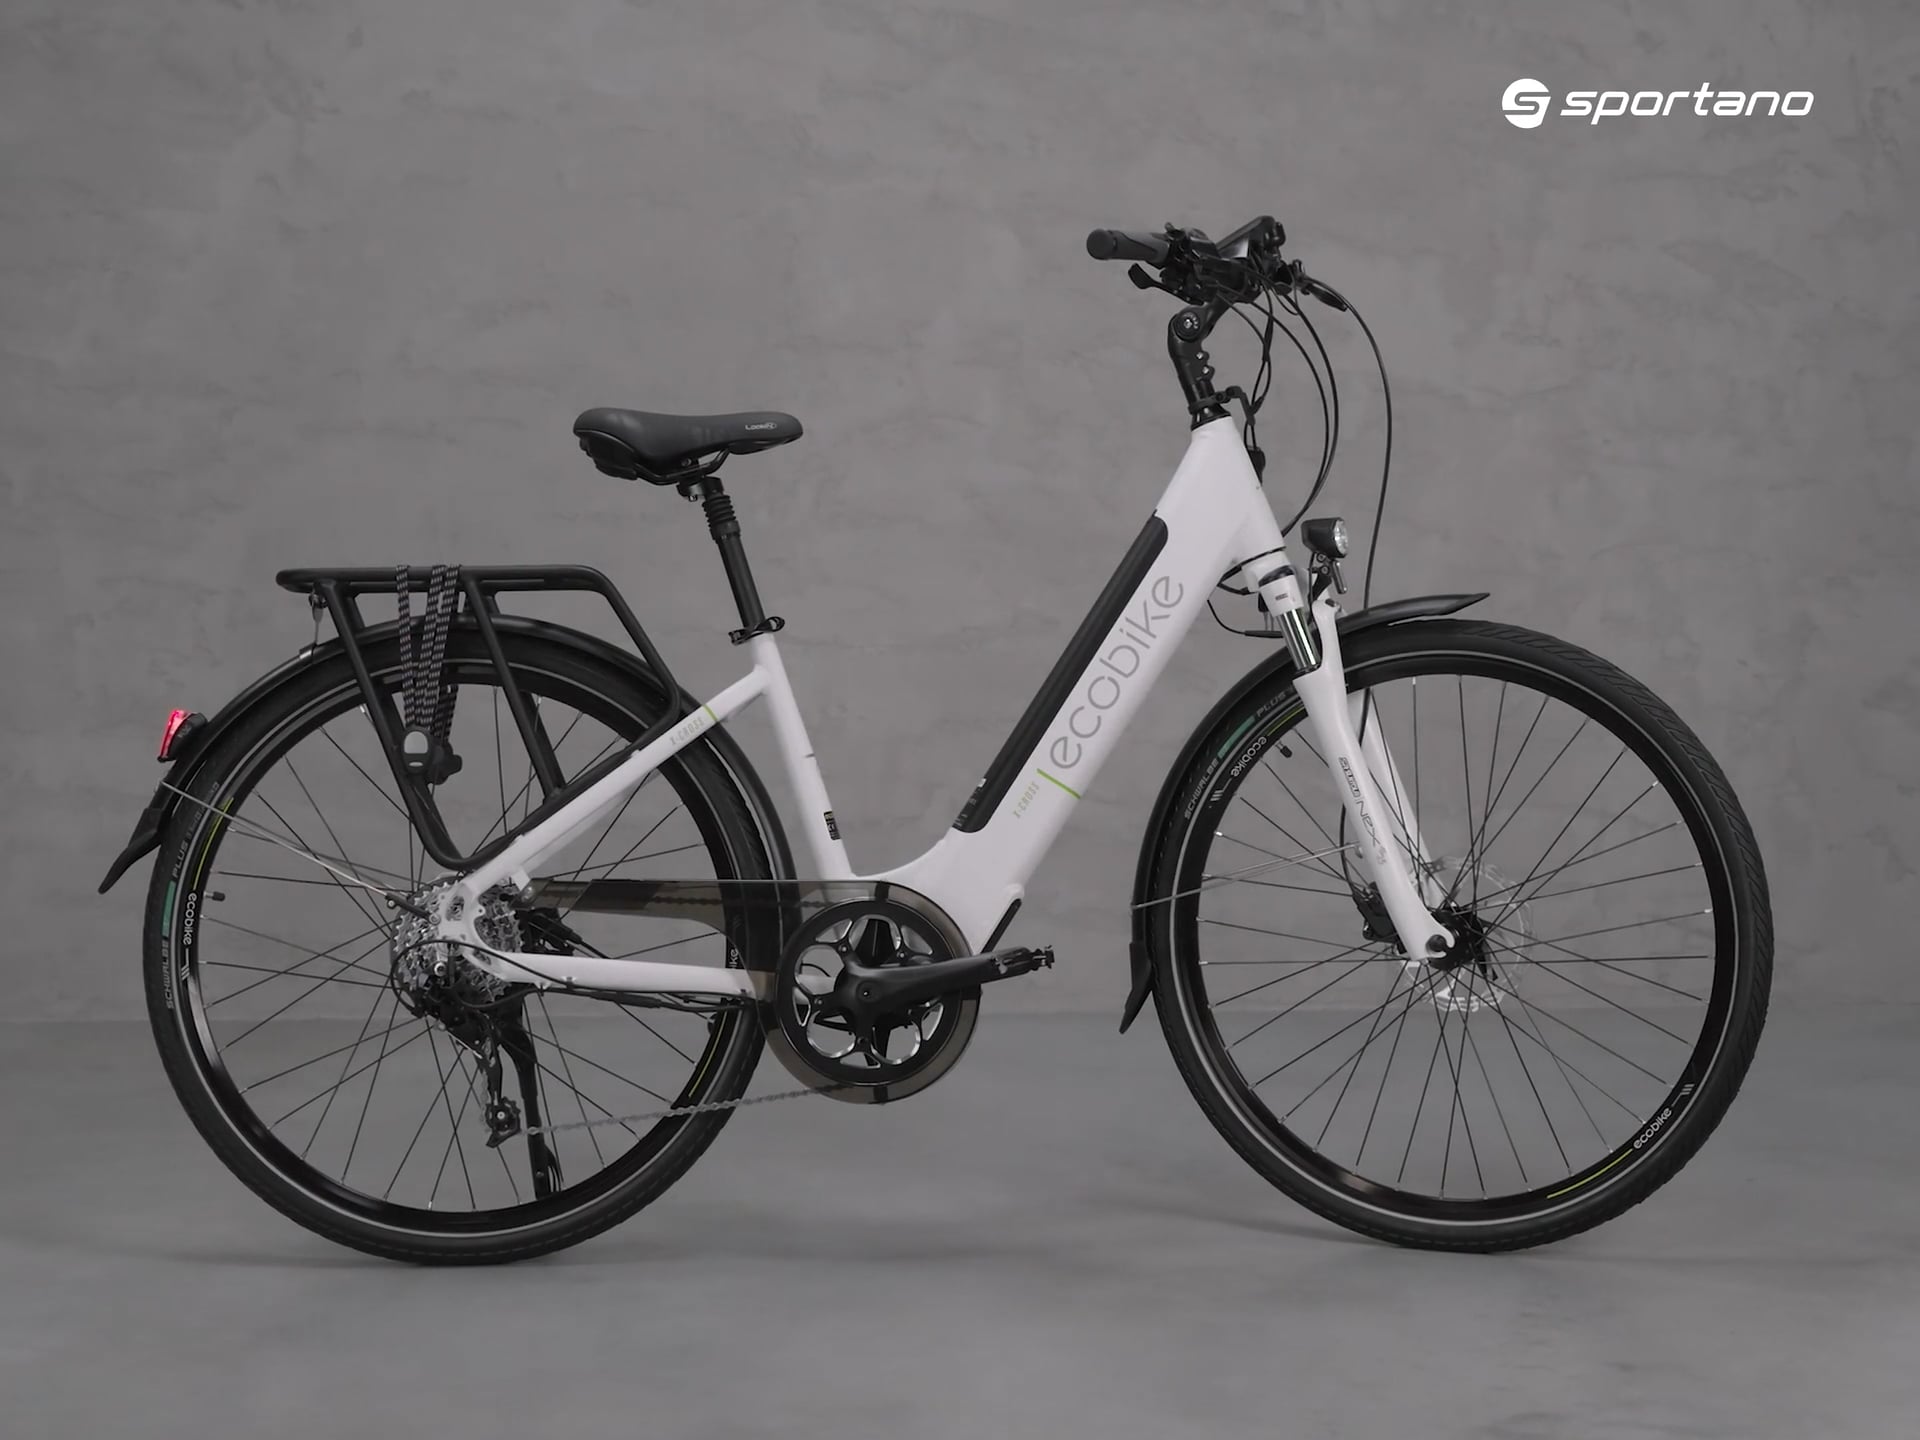 Ecobike X-Cross L/17.5Ah LG elektromos kerékpár fehér 1010301